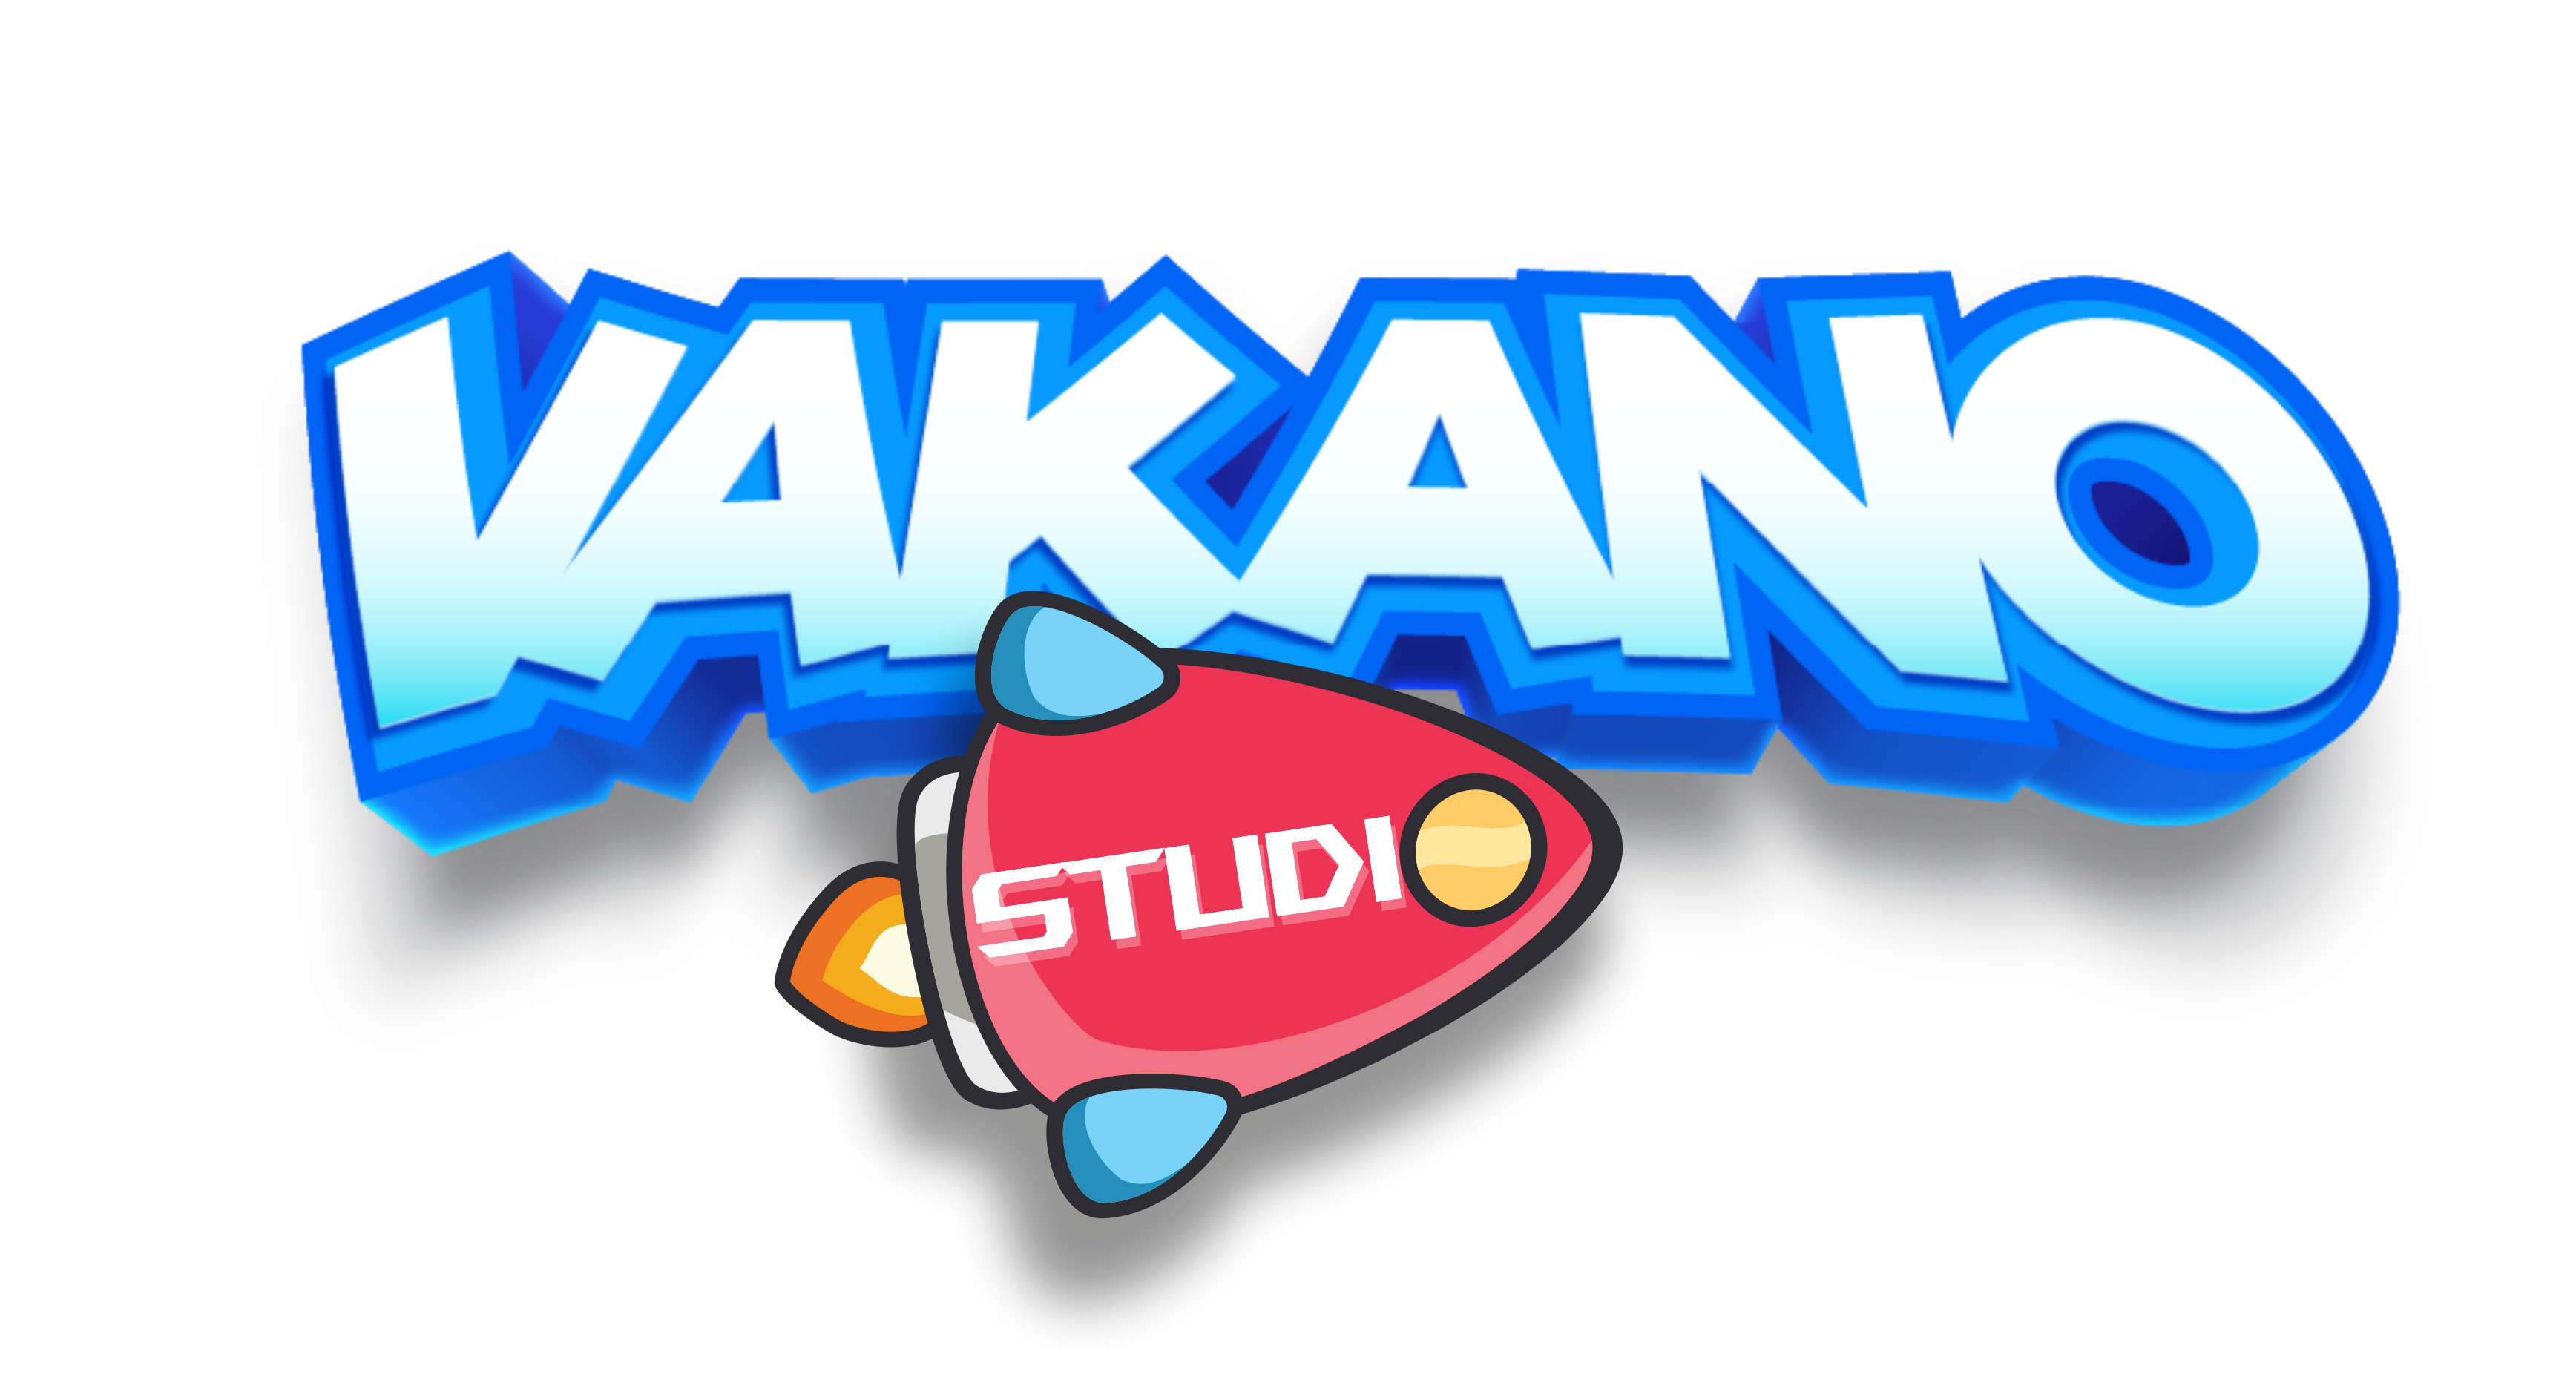 Vakano Studio